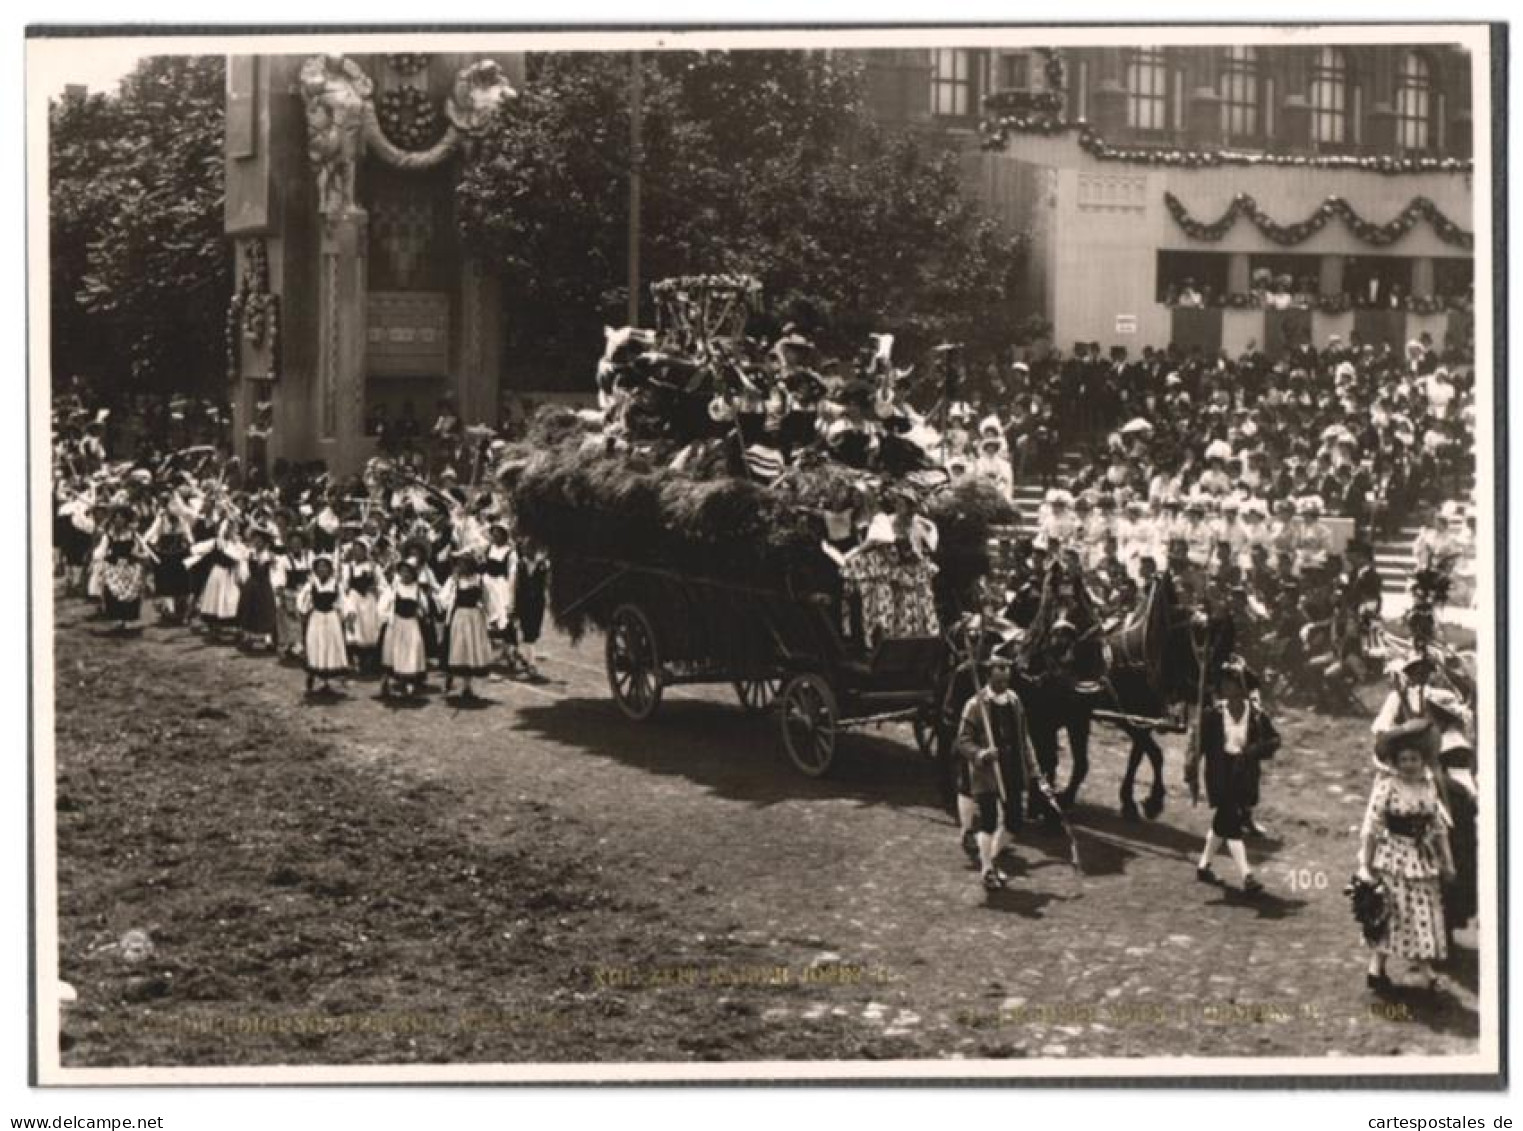 Archiv-Fotografie R. Lechner, Wien, Ansicht Wien, Kaiser-Huldigungs-Festzug 1908, Zeit Kaiser Josef II.  - Personalità